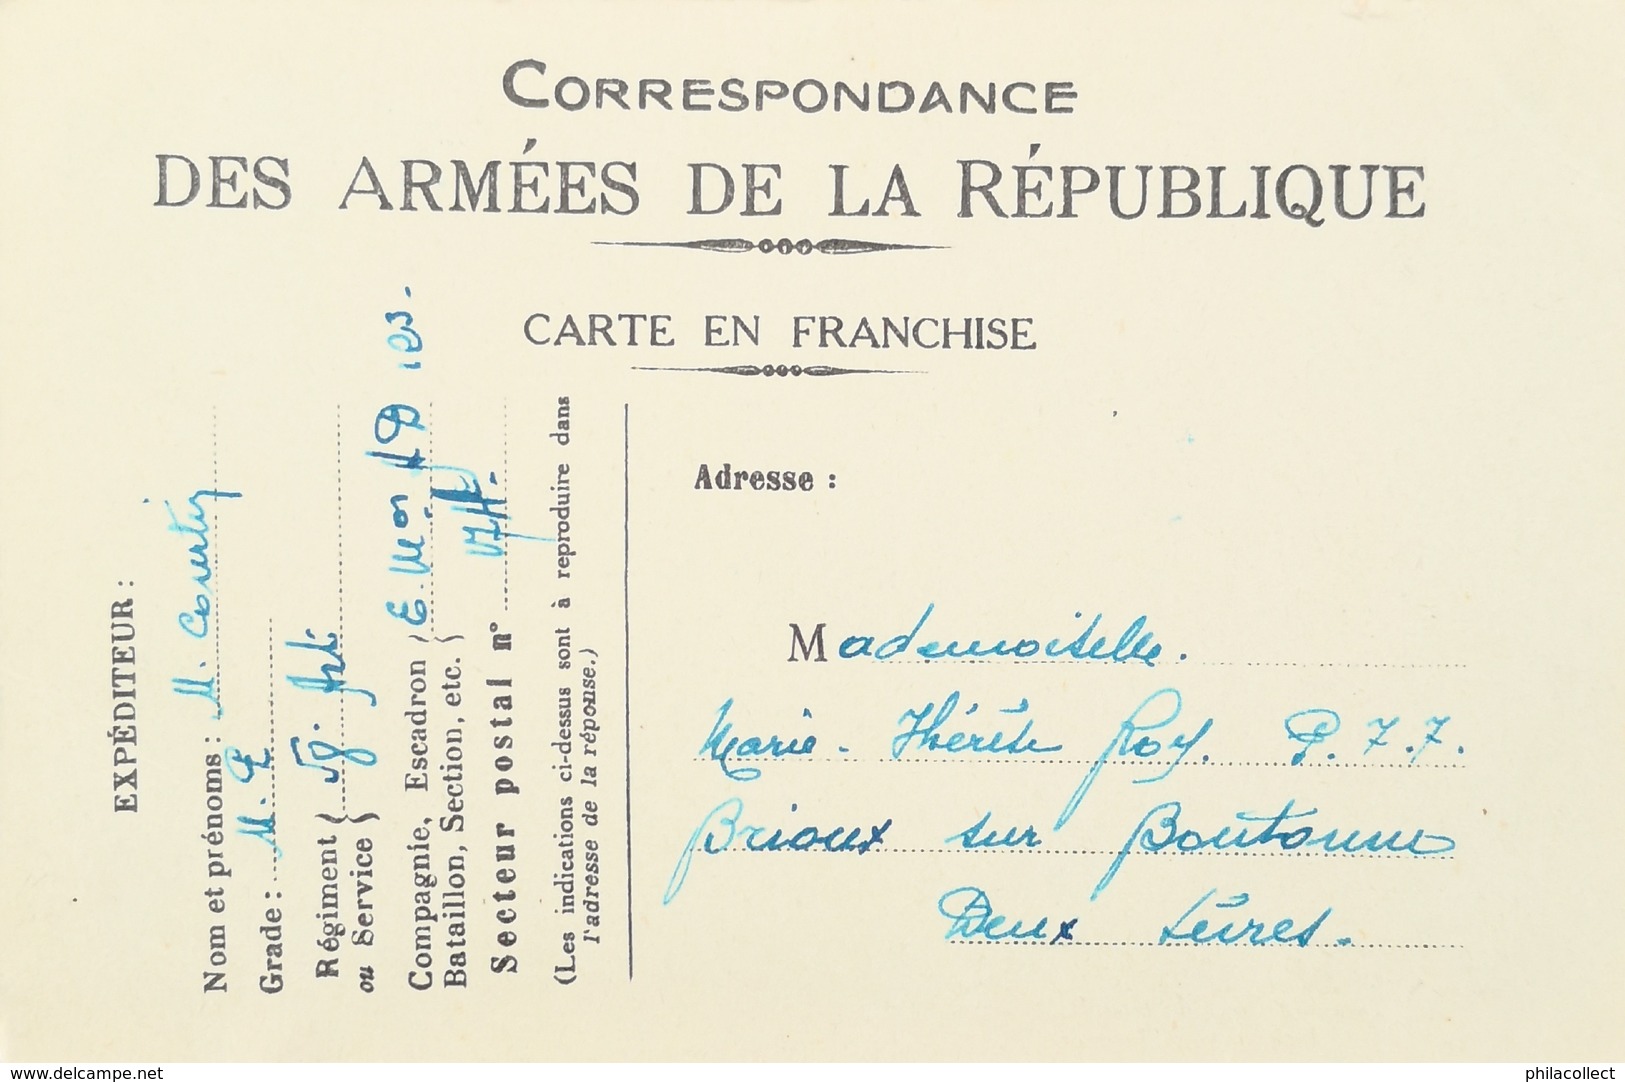 Carte Correspondance Des Armees De La Republique (France) Troupes Americaines - Une Arrivee Juin 1917 (MORSE CODE)) 19?? - Personen